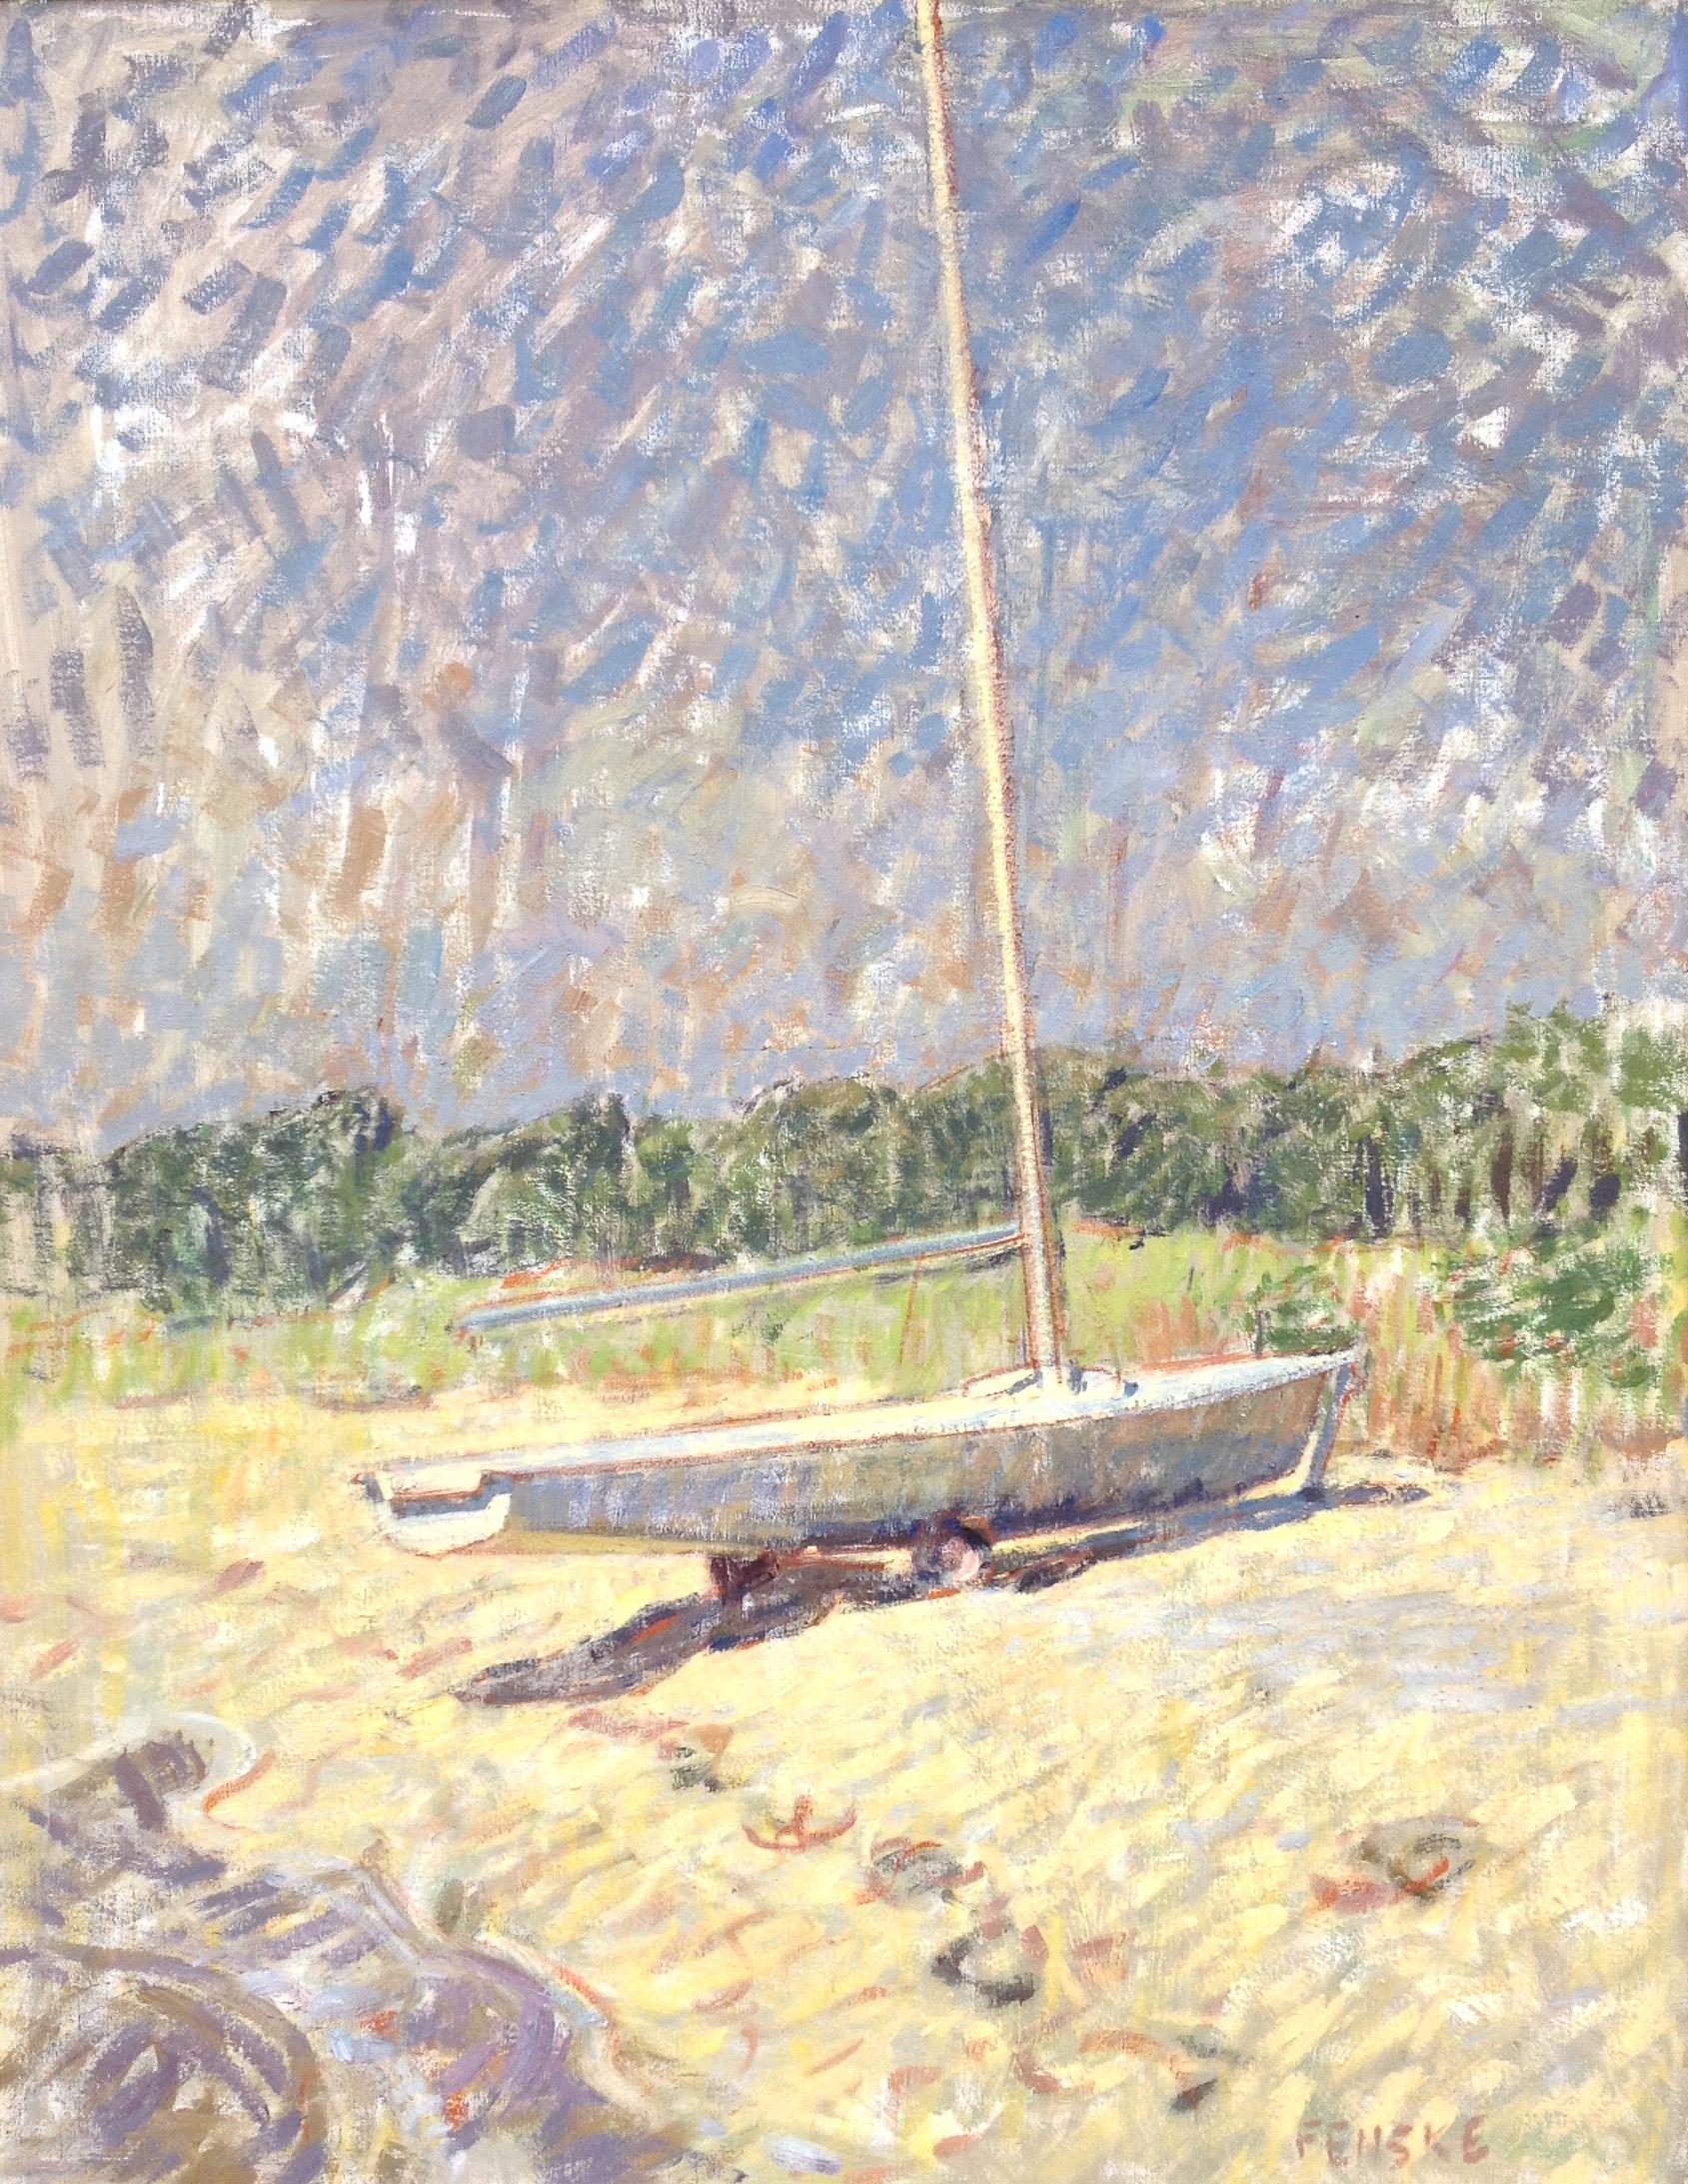 Ben Fenske Figurative Painting – "Segelboot" zeitgenössische impressionistische Ölgemälde von Boot am Strand, Sommer